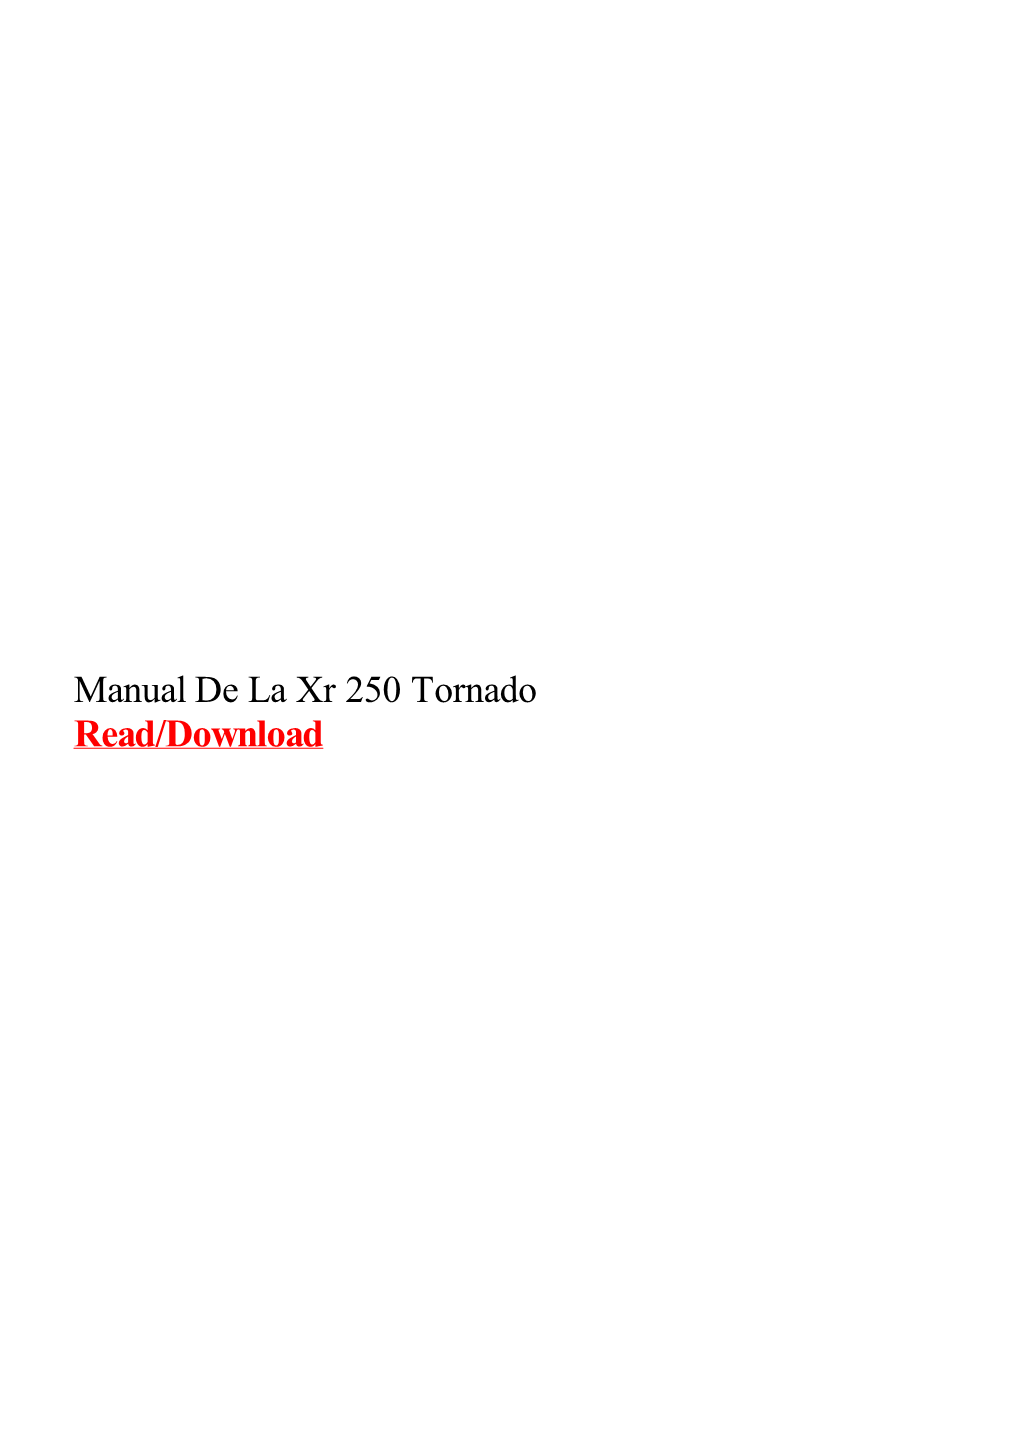 Manual De La Xr 250 Tornado